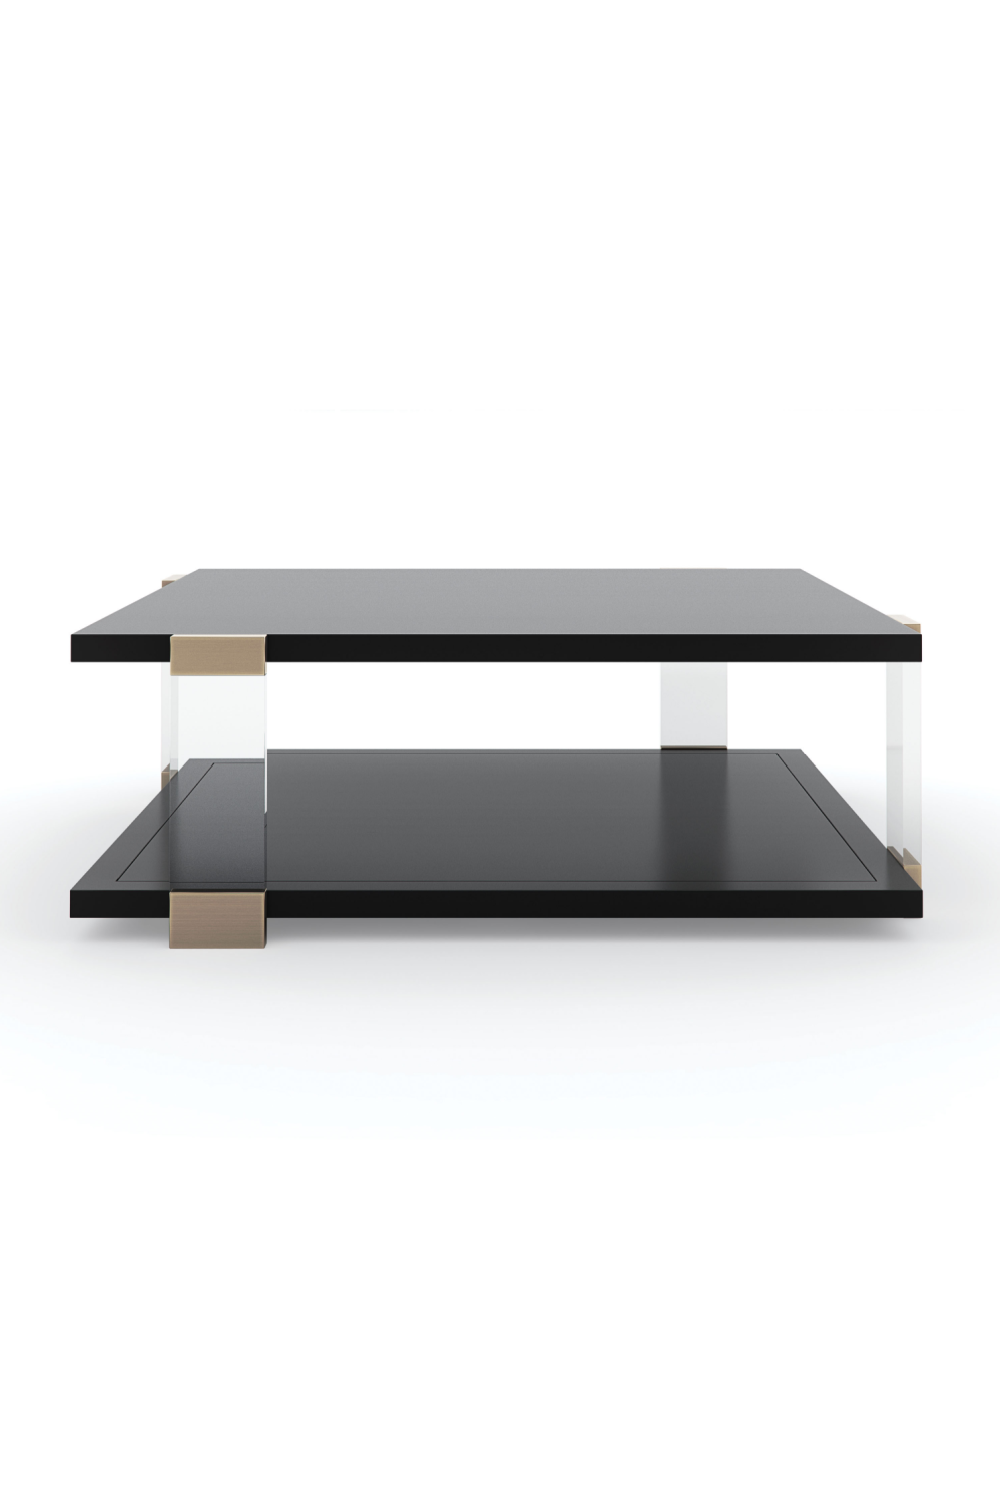 Square Black Coffee Table | Caracole I'll Take The Corner Table | Oroa.com